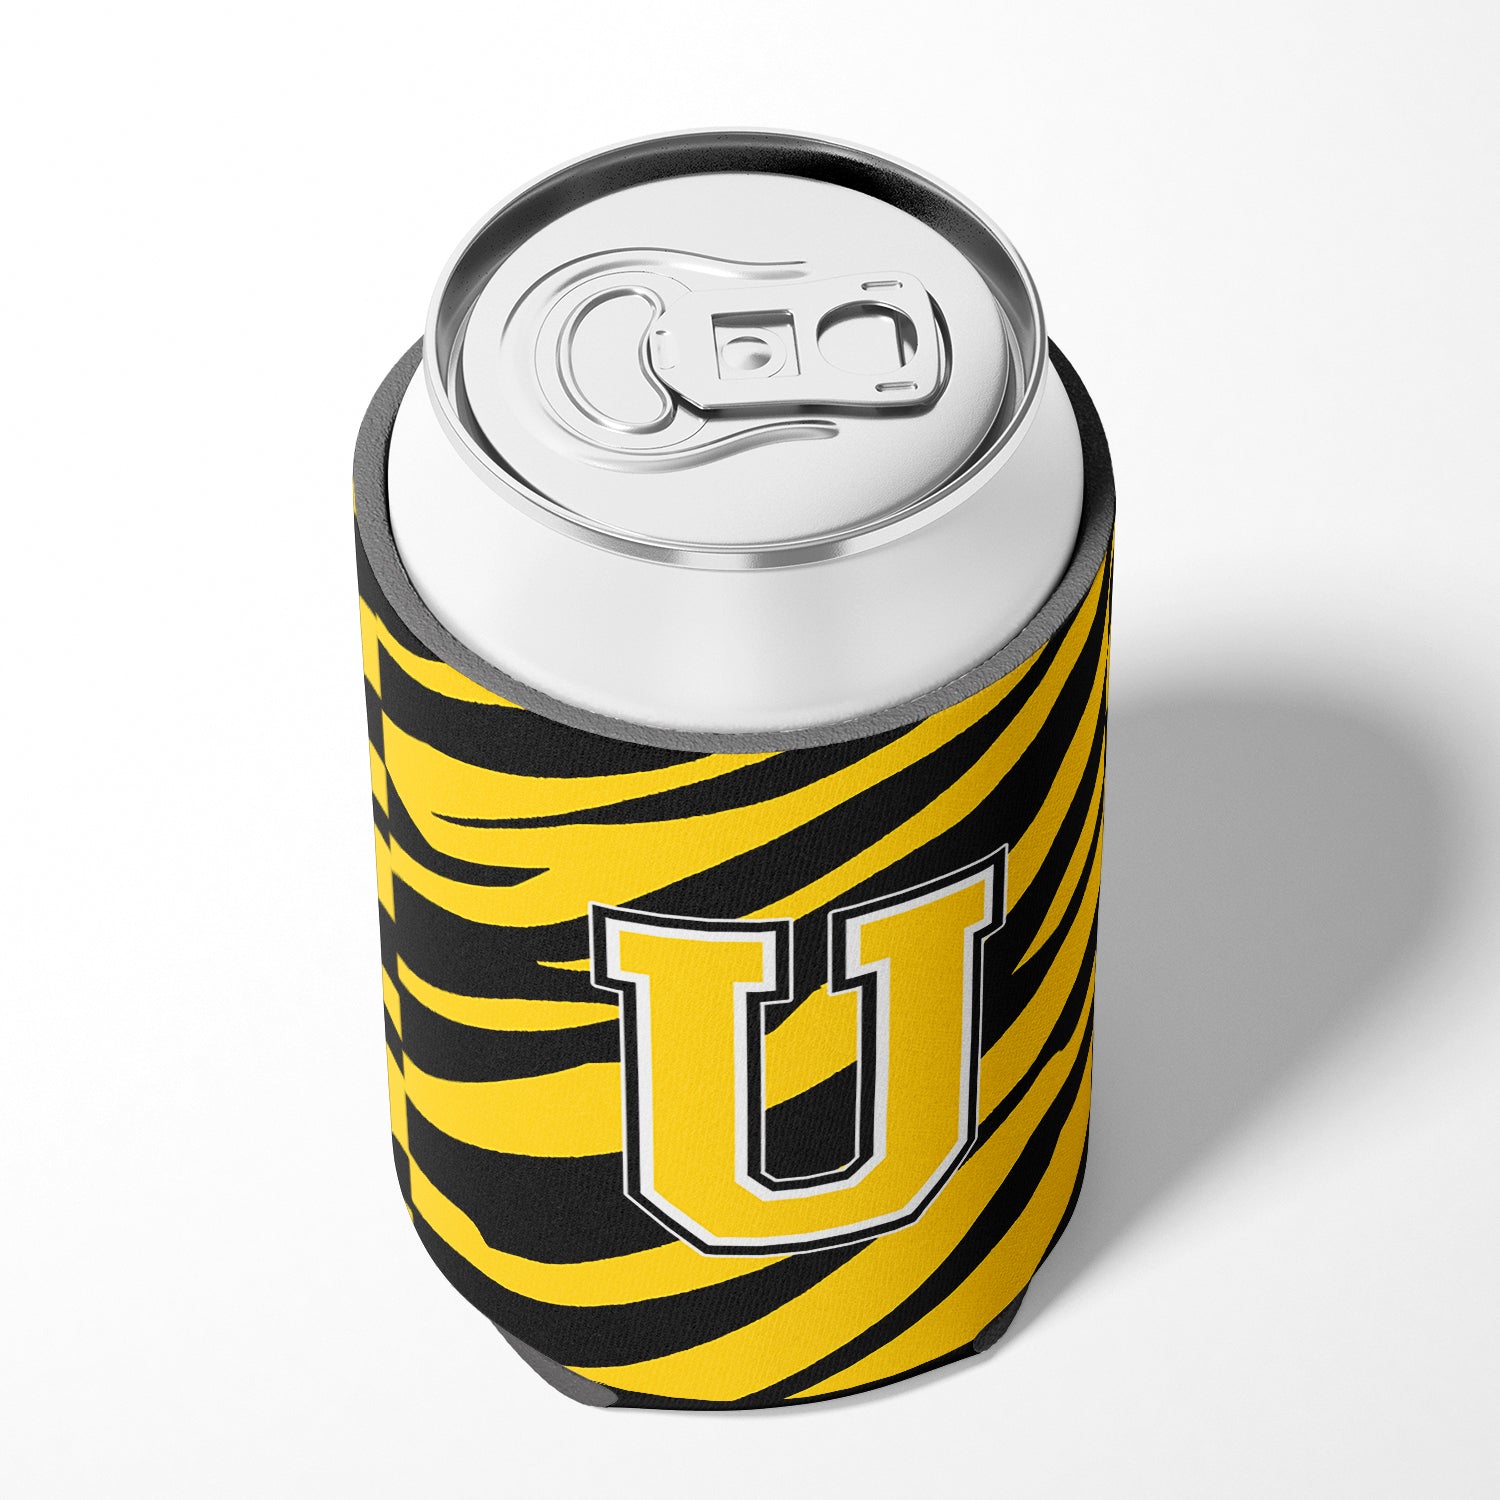 Letter U Initial Monogram - Tiger Stripe - Black Gold Can Beverage Insulator Hugger.